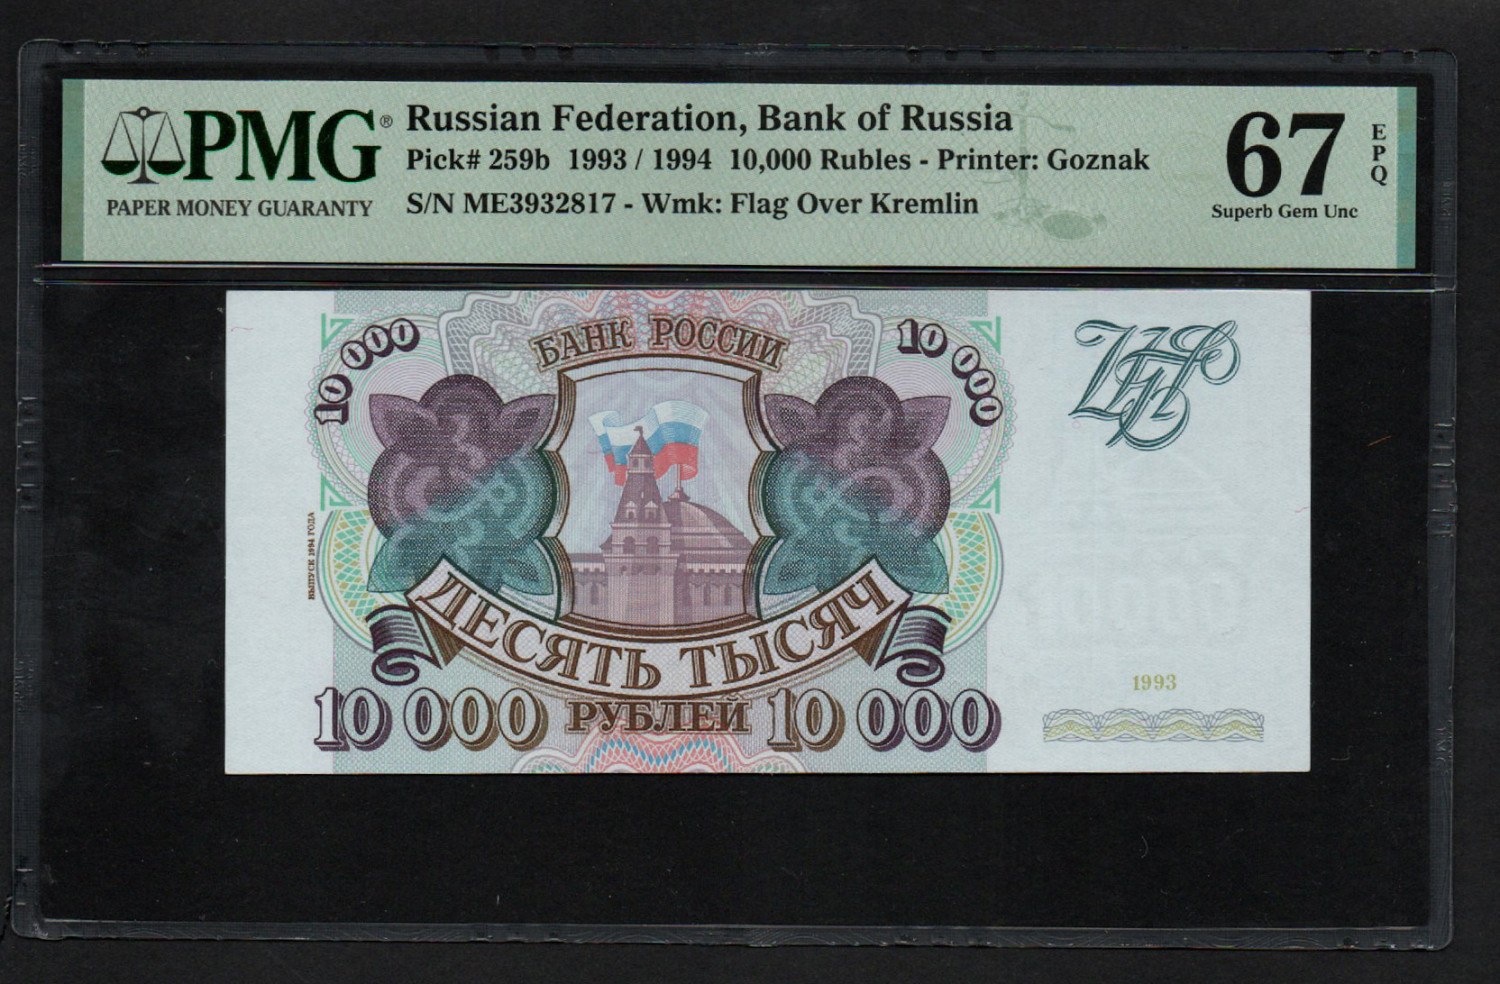 Russia 10 000 Rubles 1993/1994 - PMG 67 EPQ Superb Gem Unc - 網上